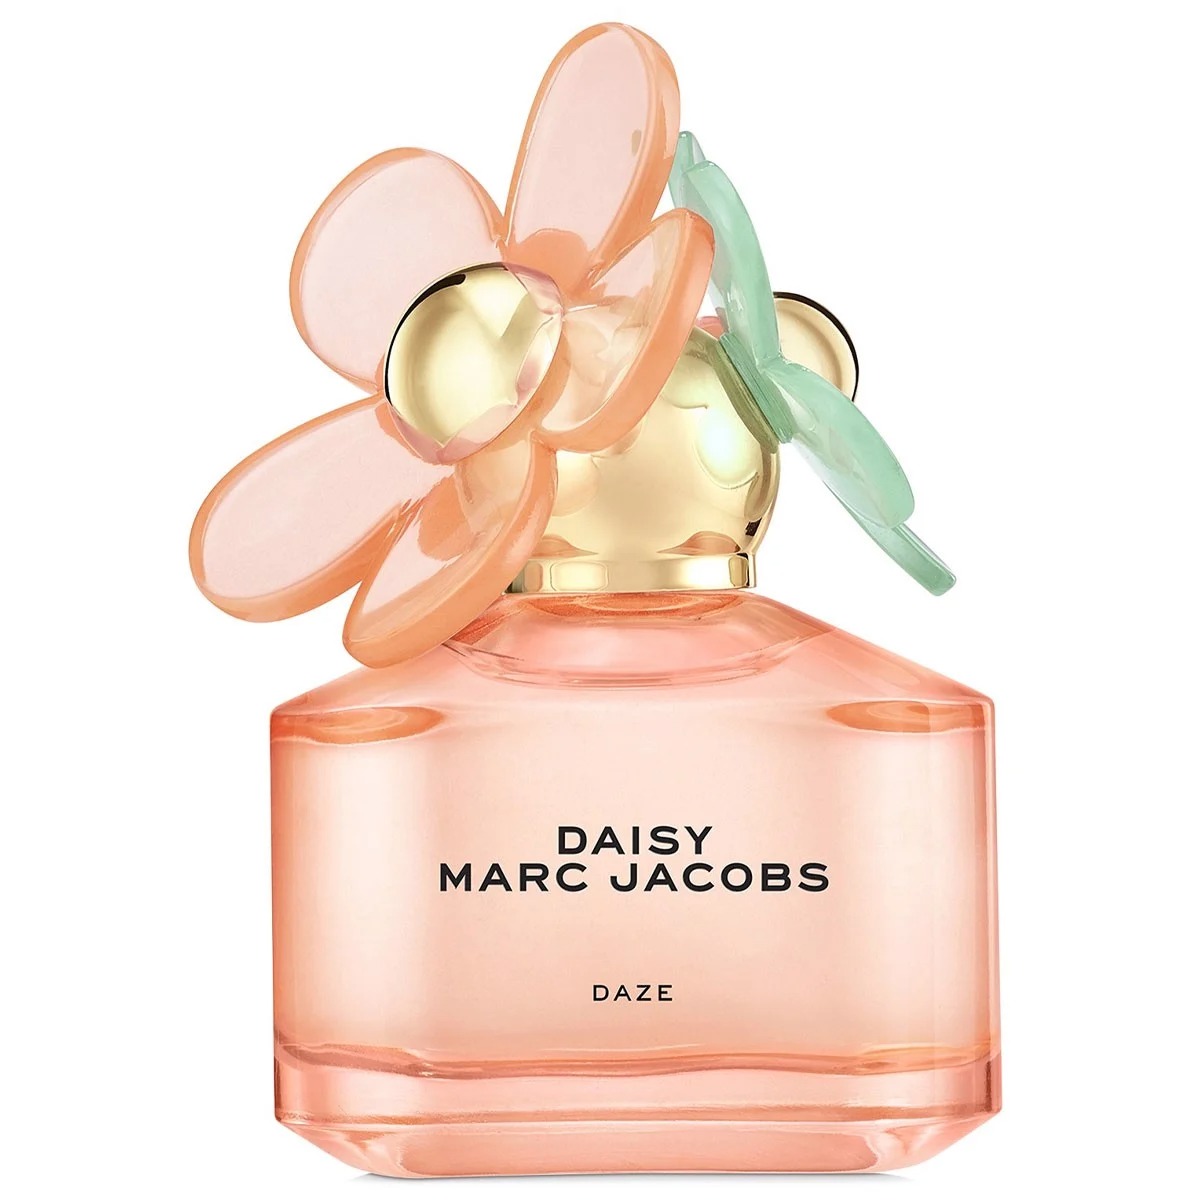 Nước hoa Marc Jacobs Daisy Daze